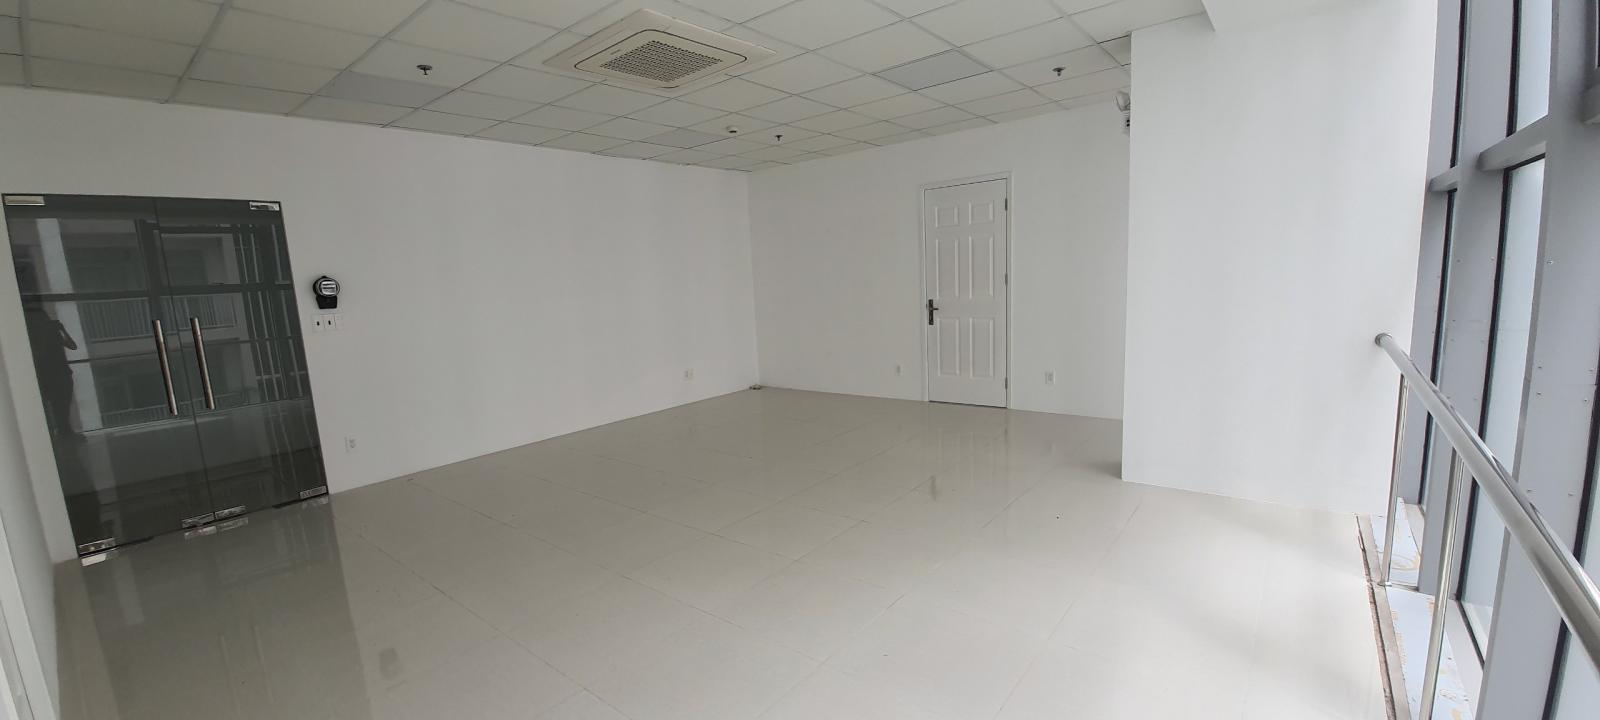 Văn phòng cho thuê Luxcity đường Huỳnh Tấn Phát Q7 nhiều diện tích .0909448284 Hiền 